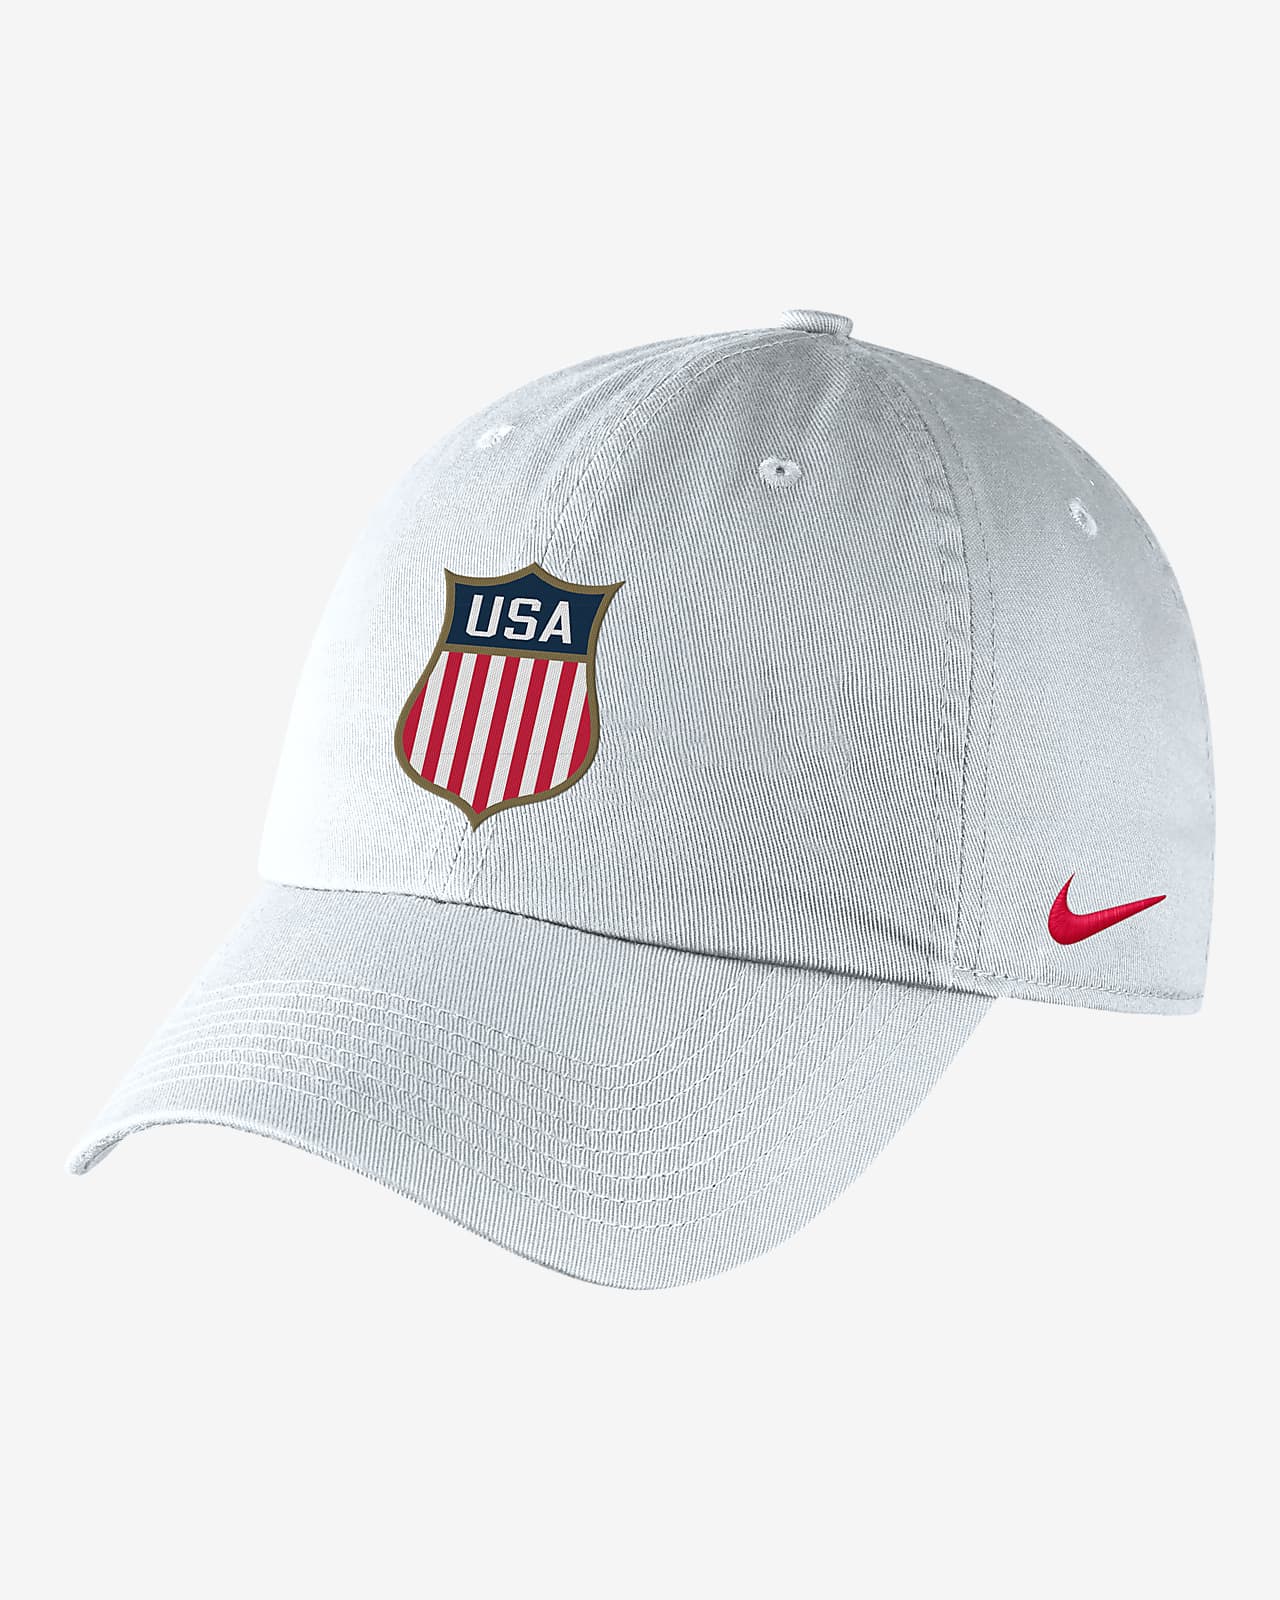 maksimere censur erklære Nike Heritage86 Adjustable Hat. Nike.com